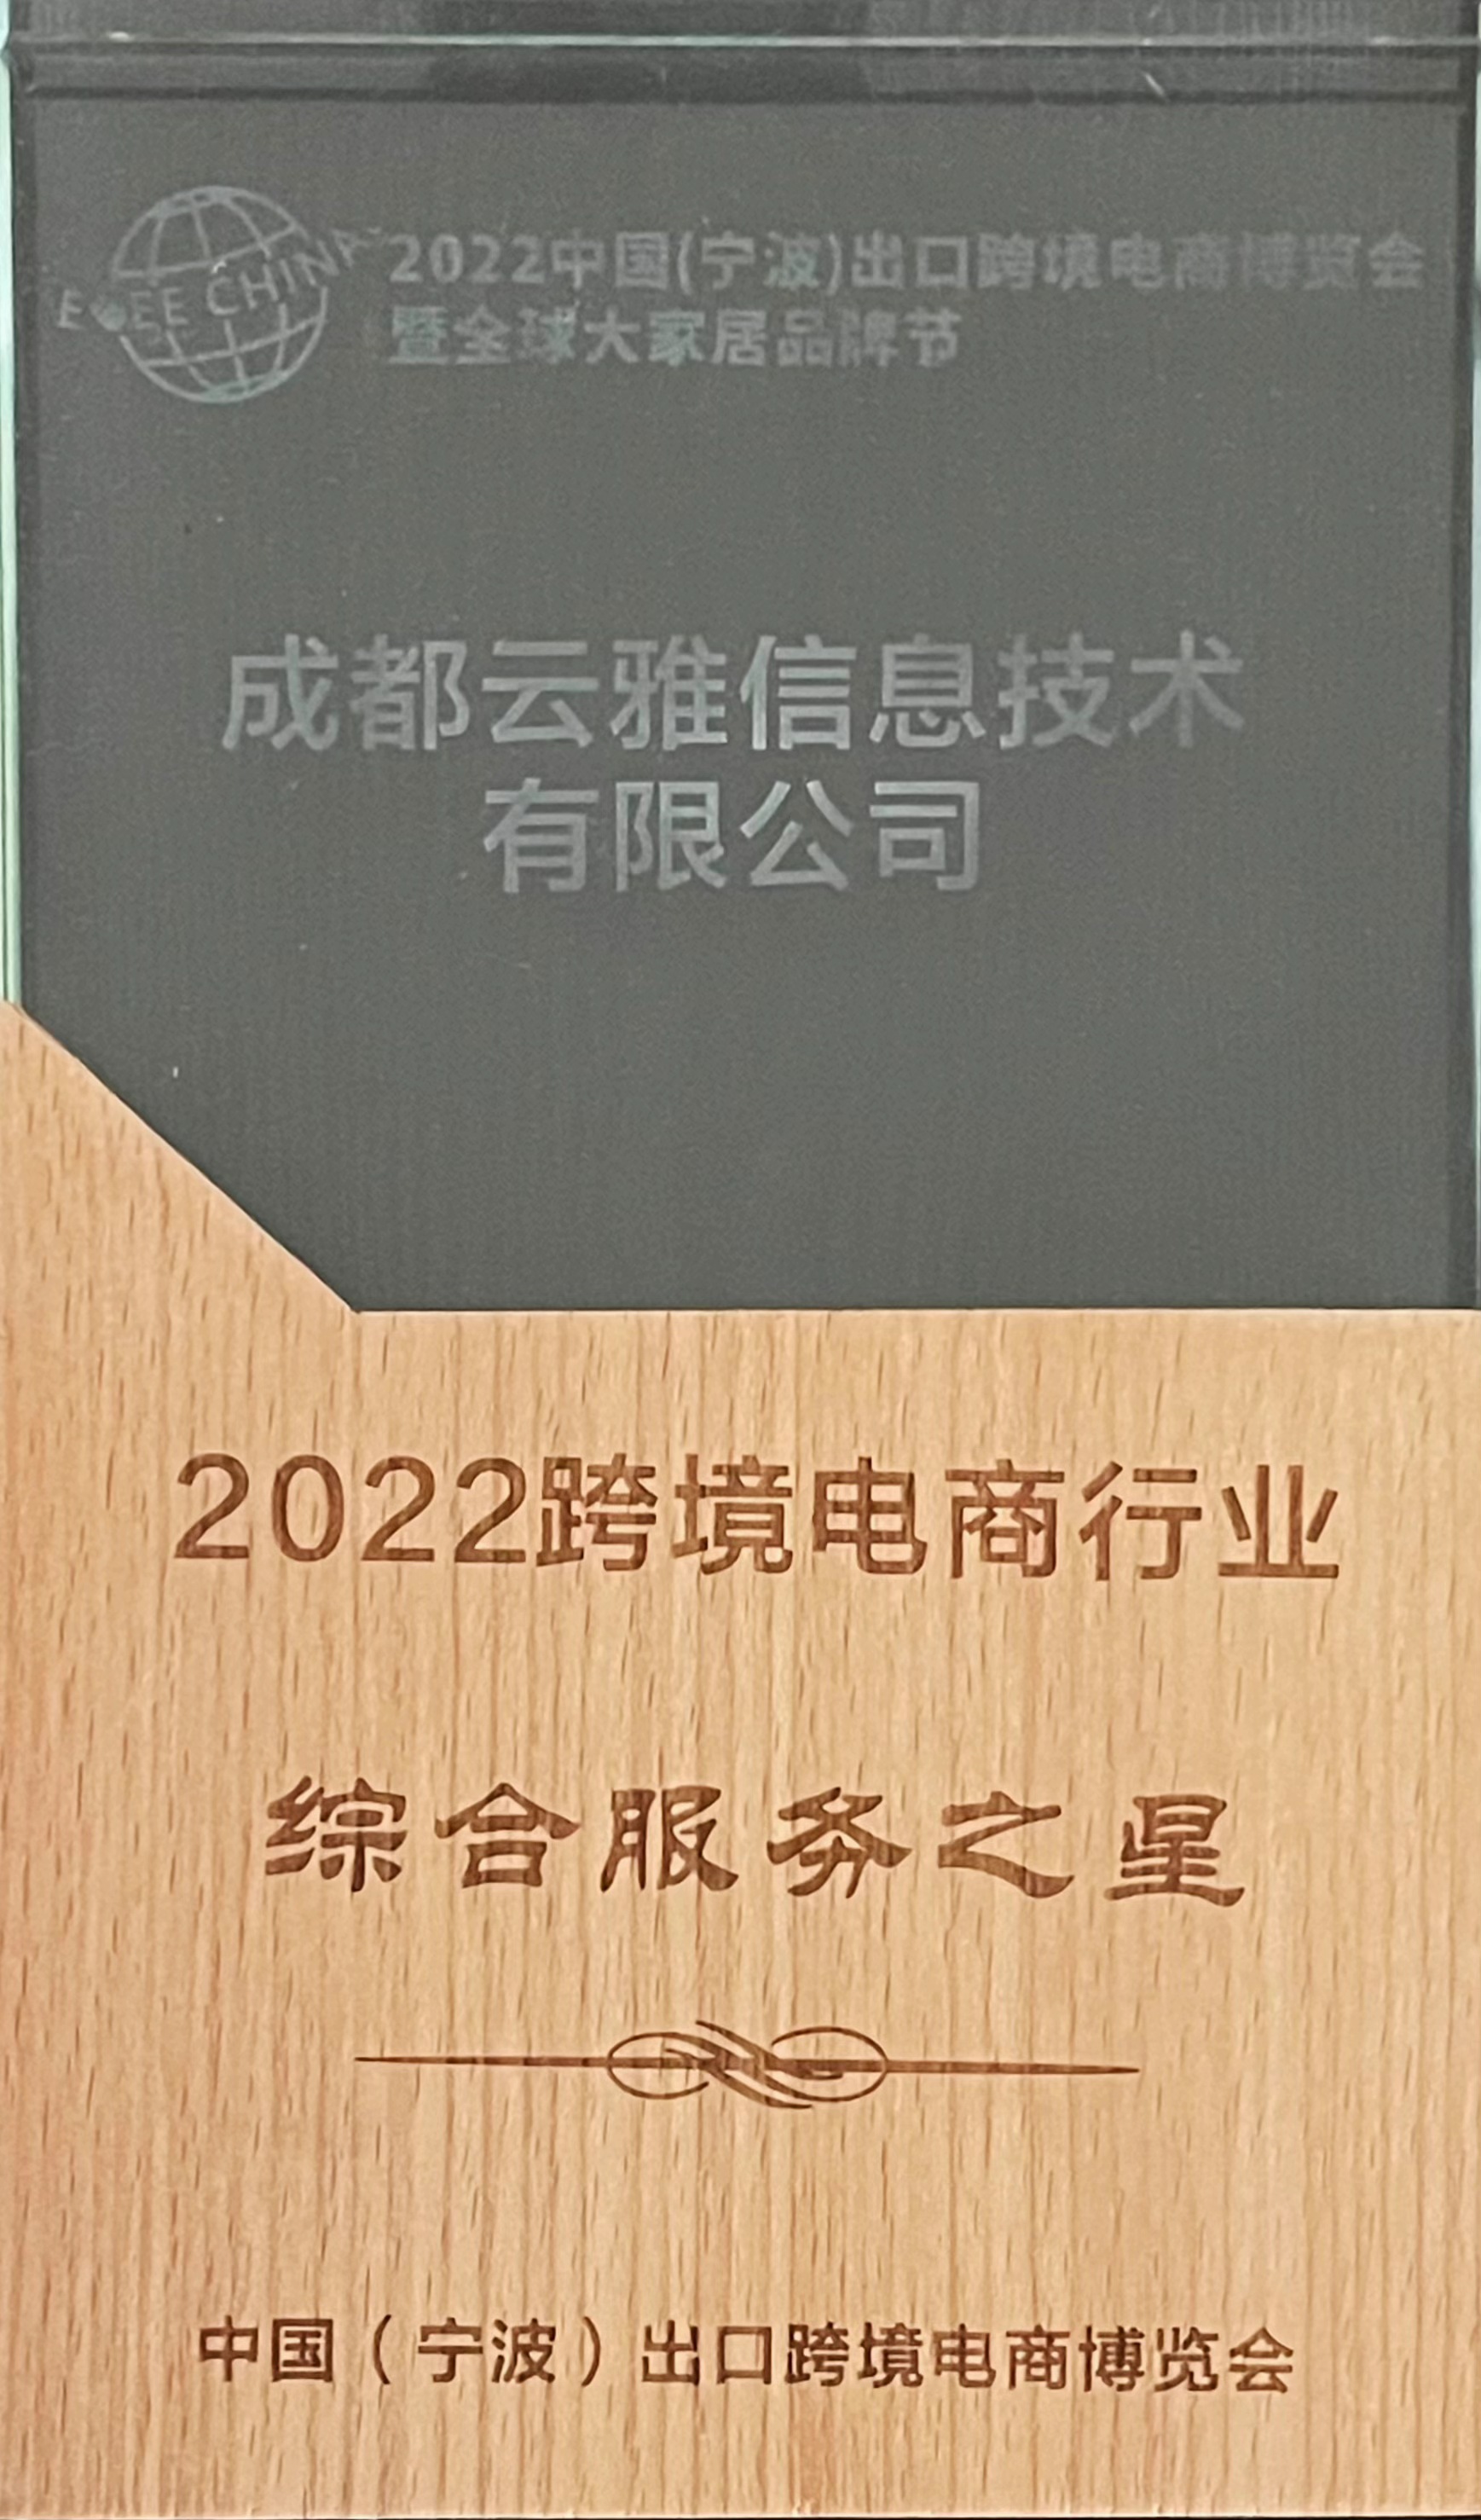 2022跨境电商行业综合服务之星